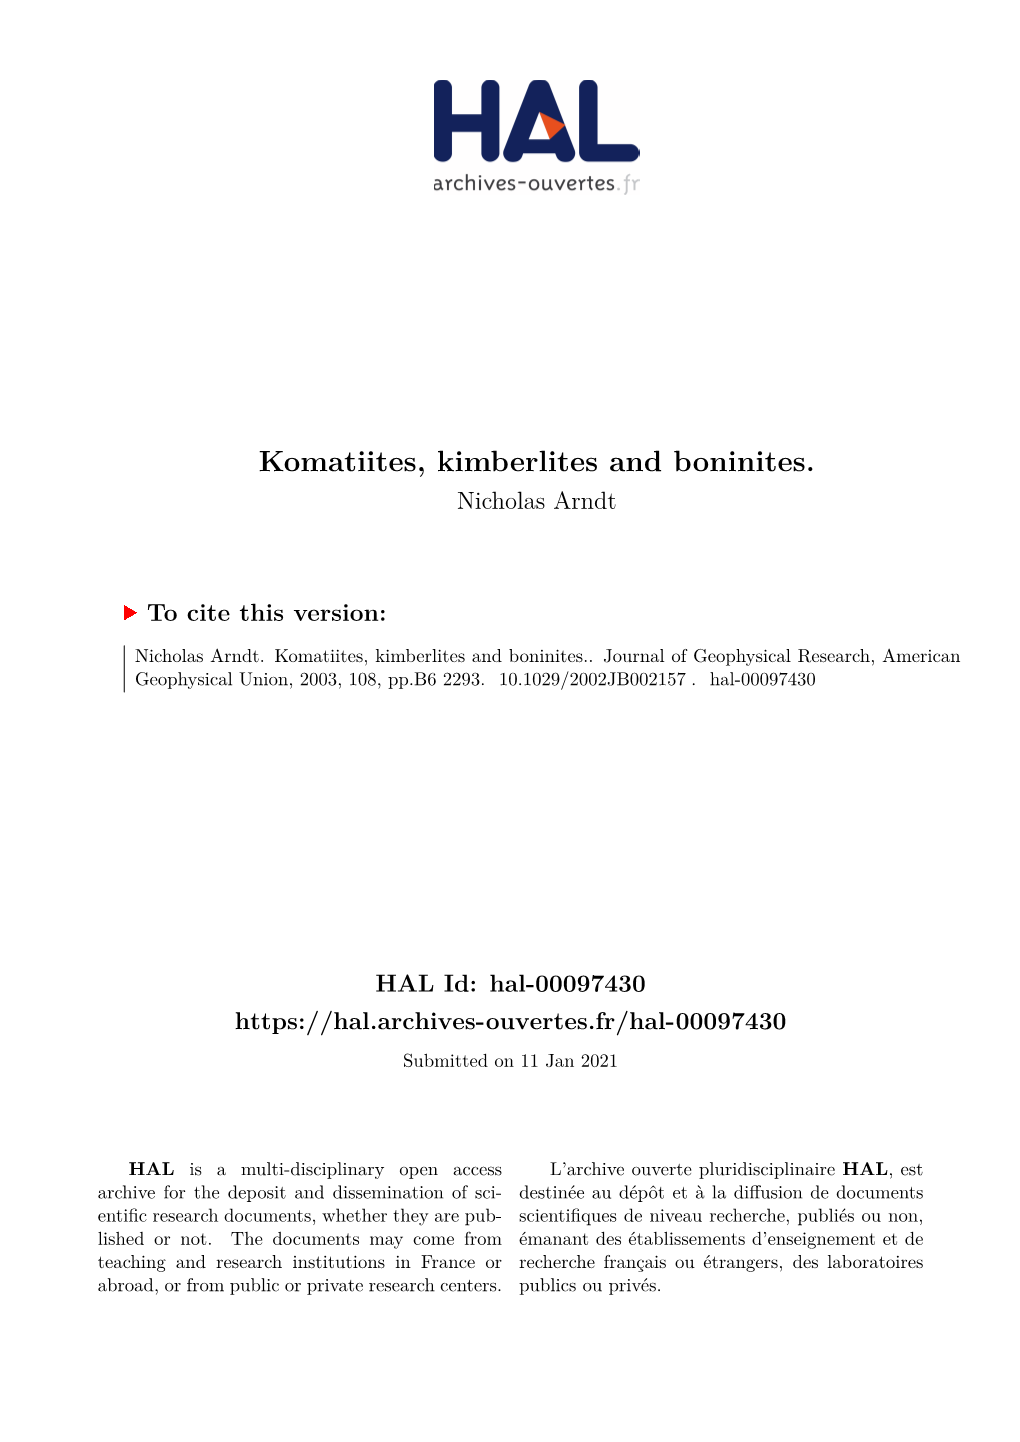 Komatiites, Kimberlites and Boninites. Nicholas Arndt